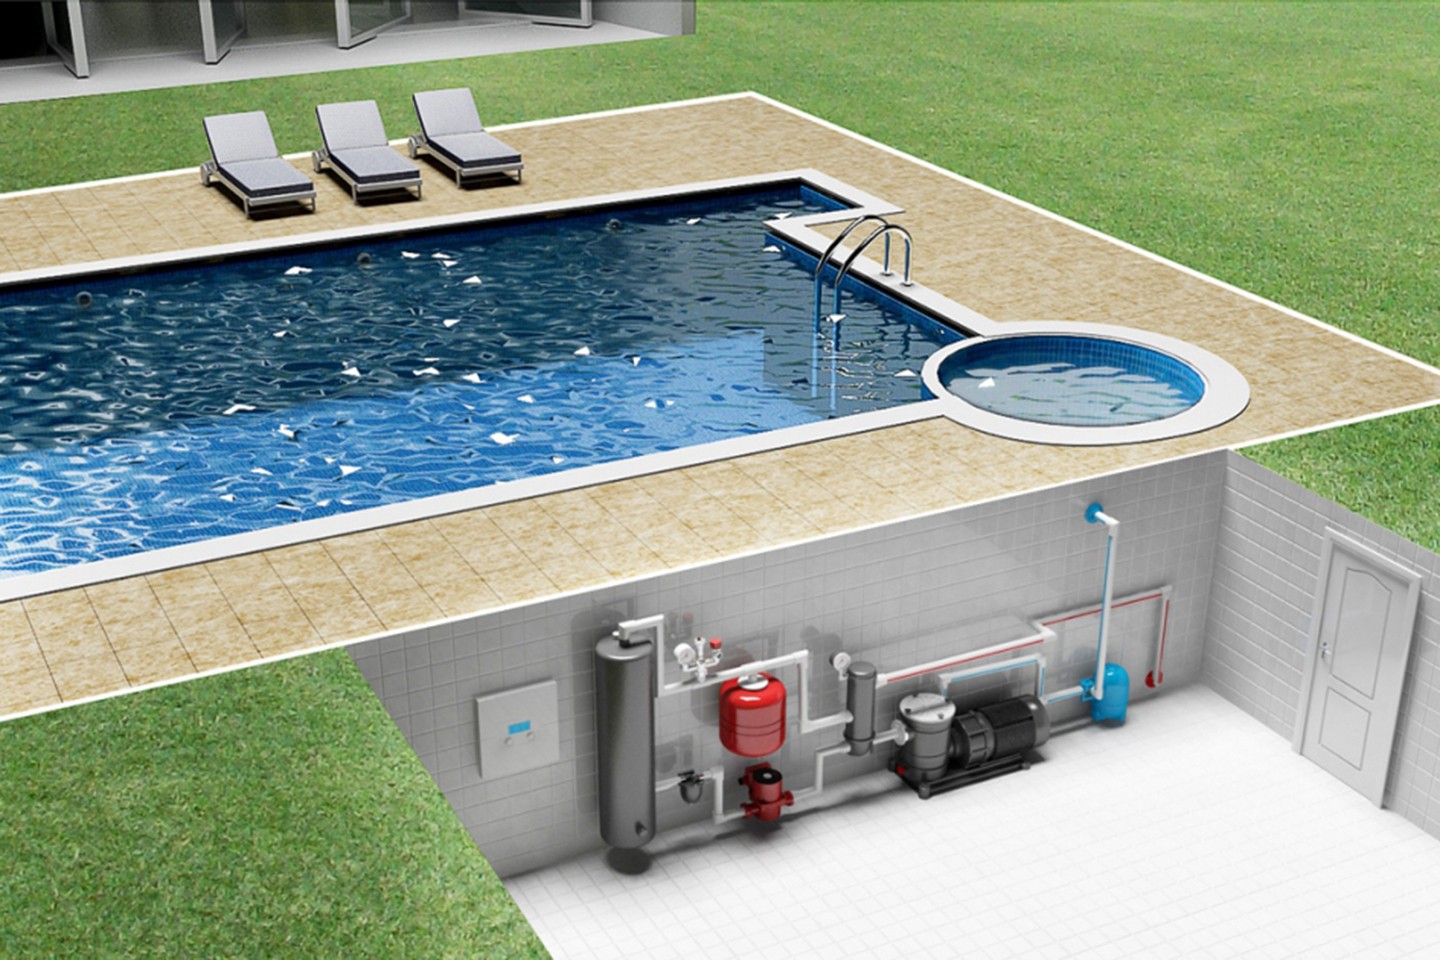 Насос для бассейна: тепловые и дренажные насосы для воды, их ремонт и установка, kripsol и другие бренды. где находится в бассейне?